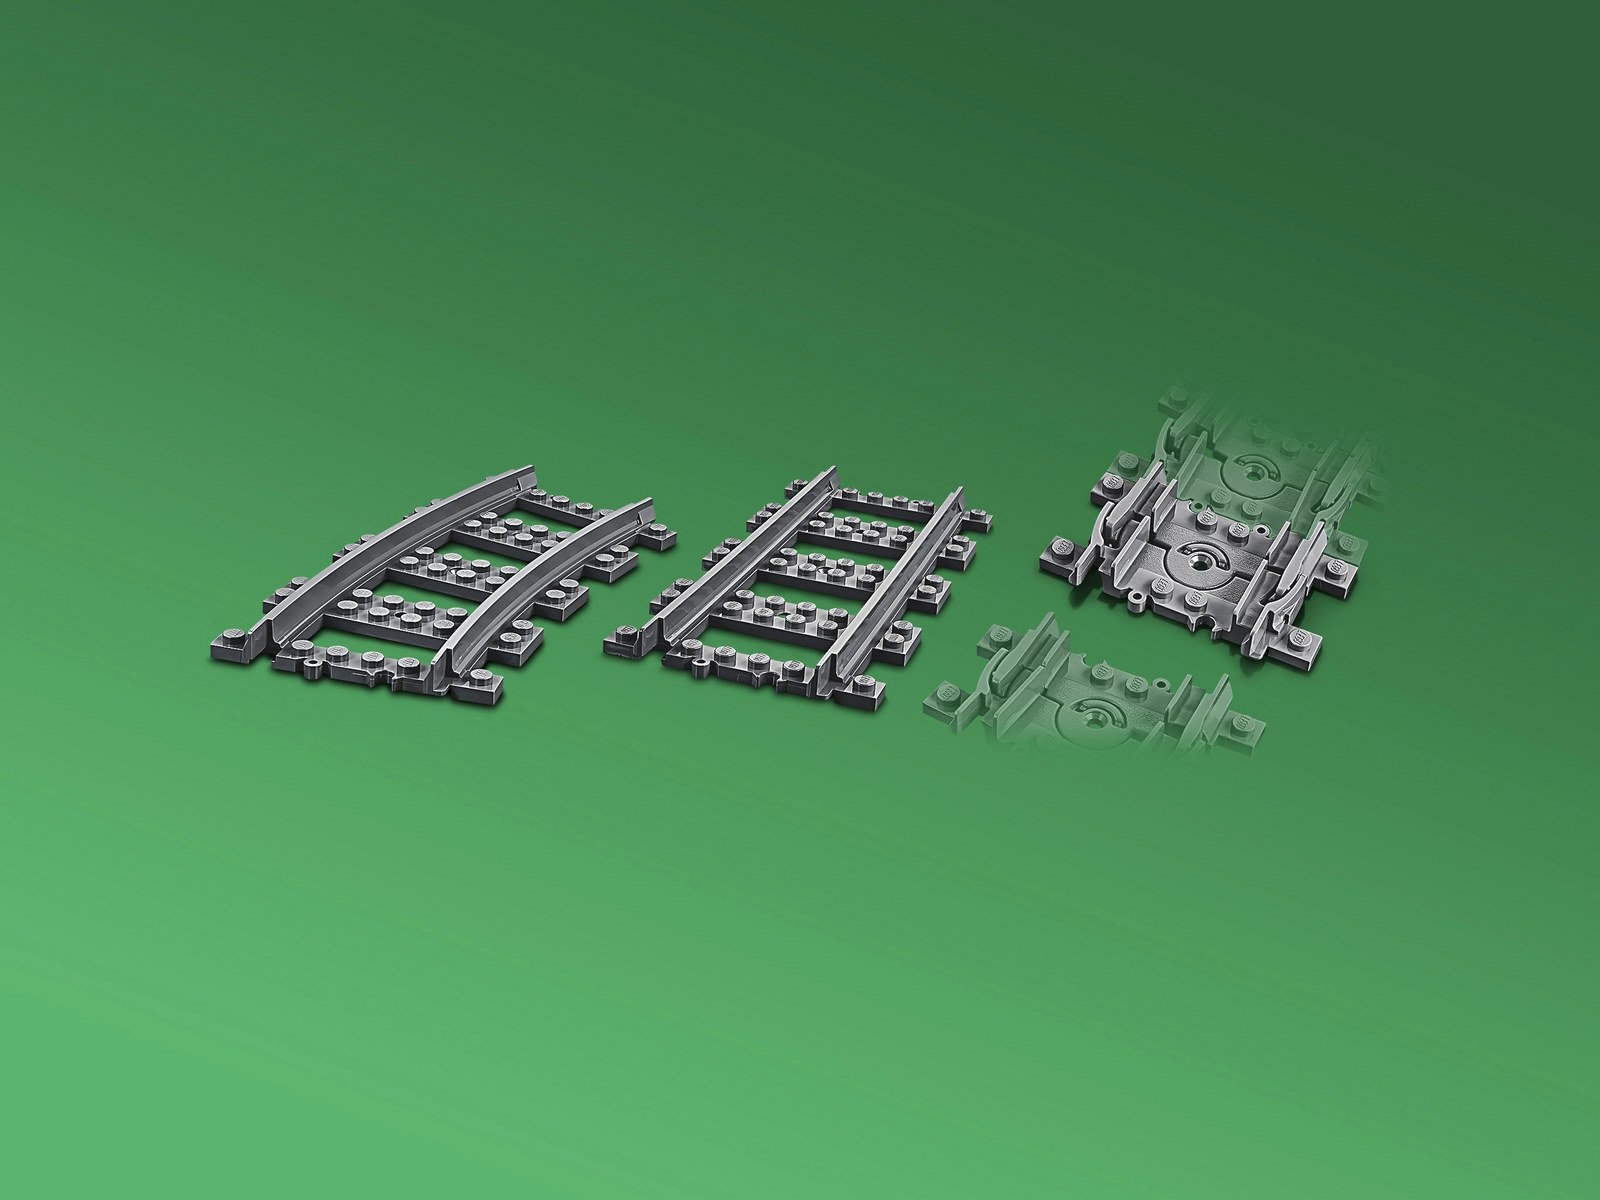 Конструктор LEGO City Trains 60205 «Рельсы» / 20 деталей